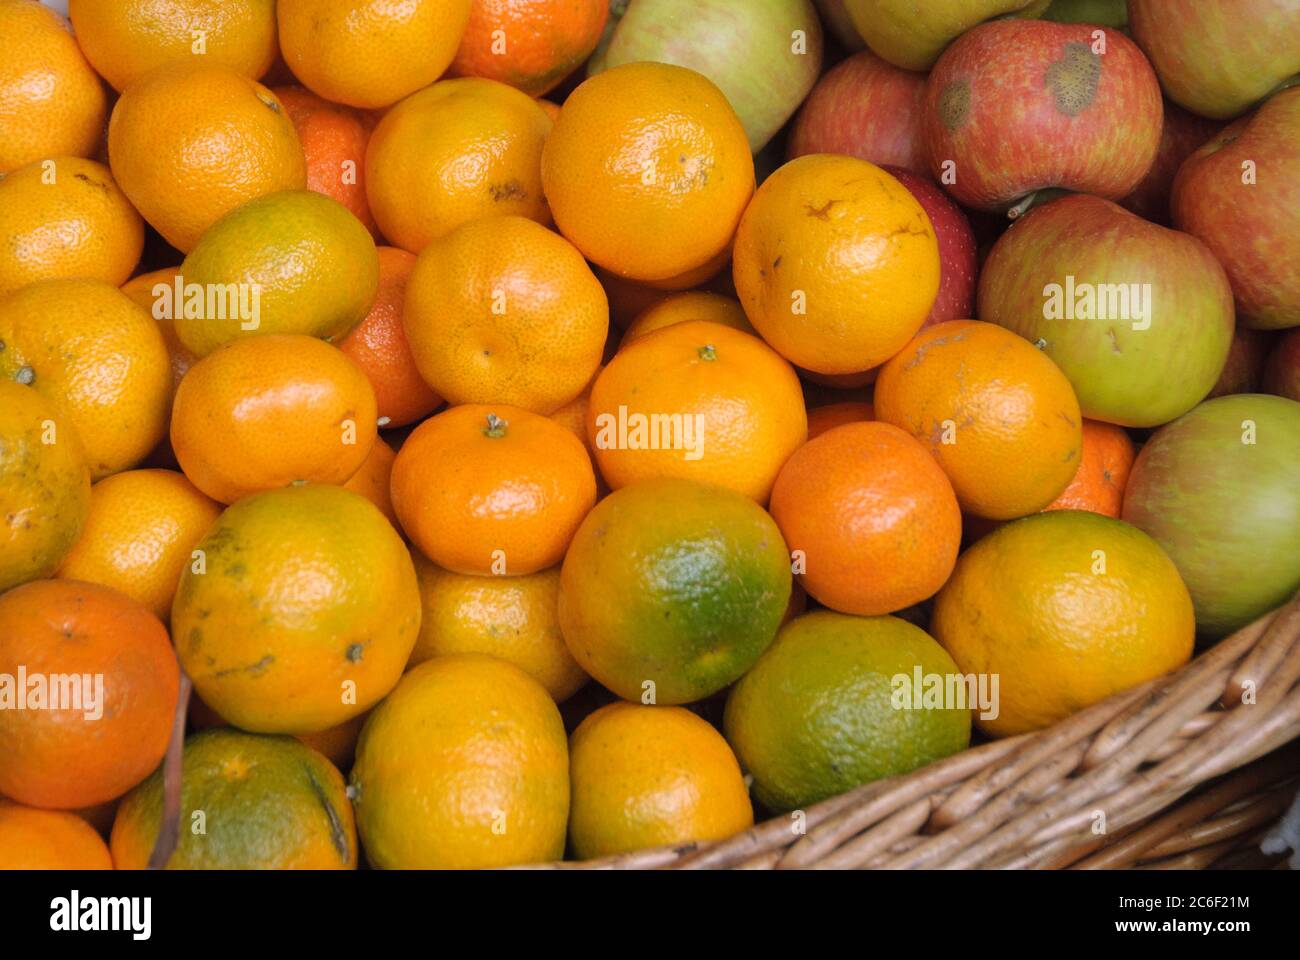 Gewoehnliche Mandarine, Citrus reticulata, Ordinary mandarin, Citrus reticulata Stock Photo